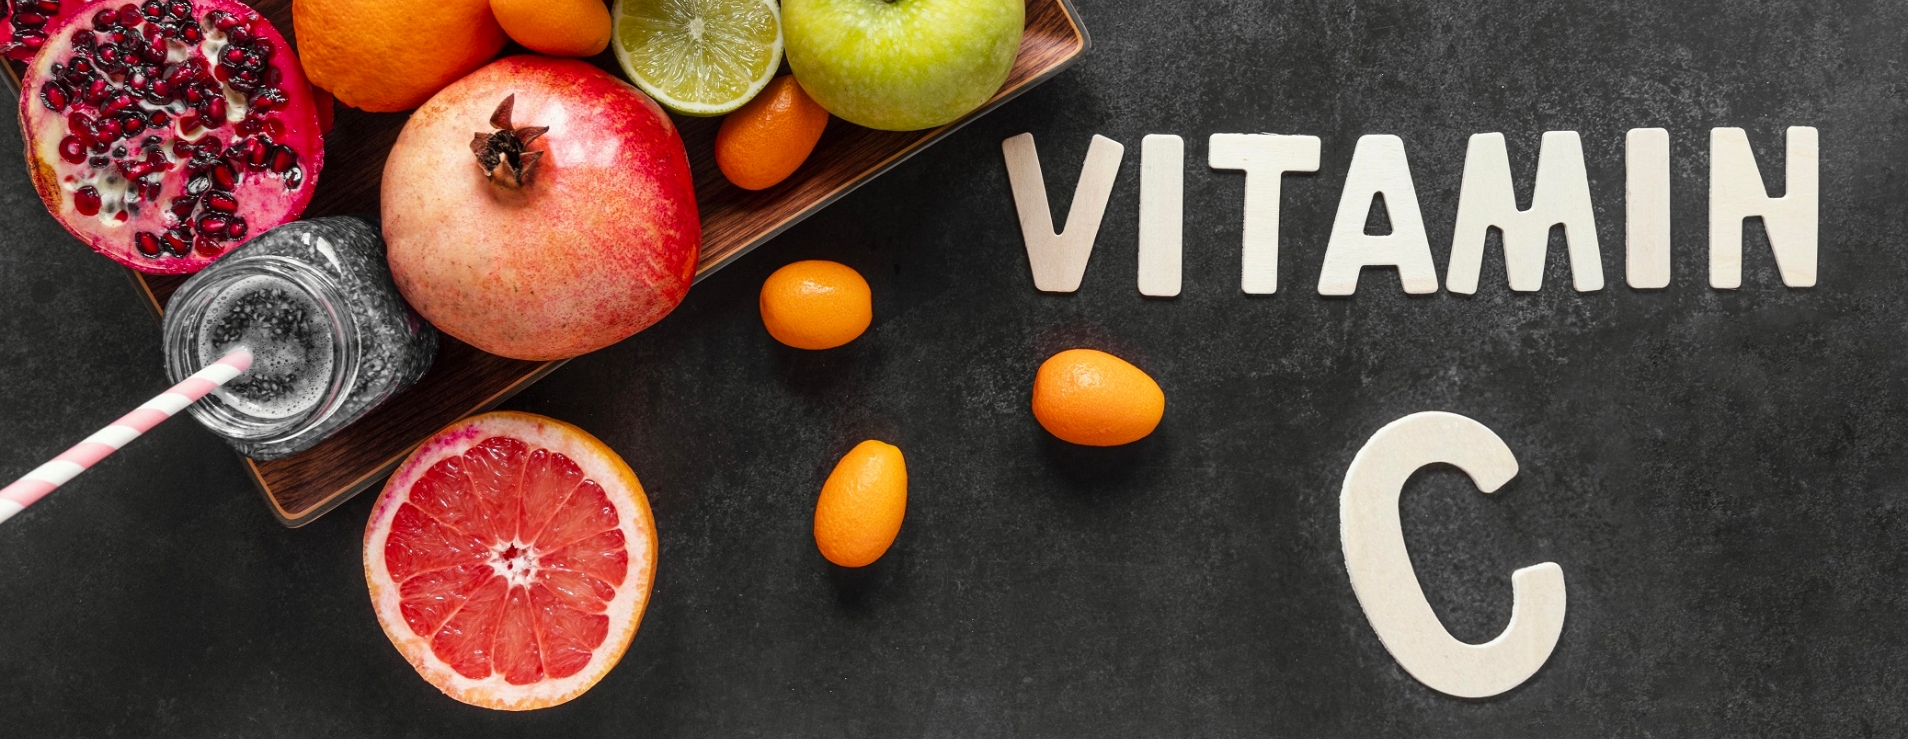 Bổ sung vitamin - "Lá chắn" bảo vệ sức khỏe cho mùa du lịch hè - 2